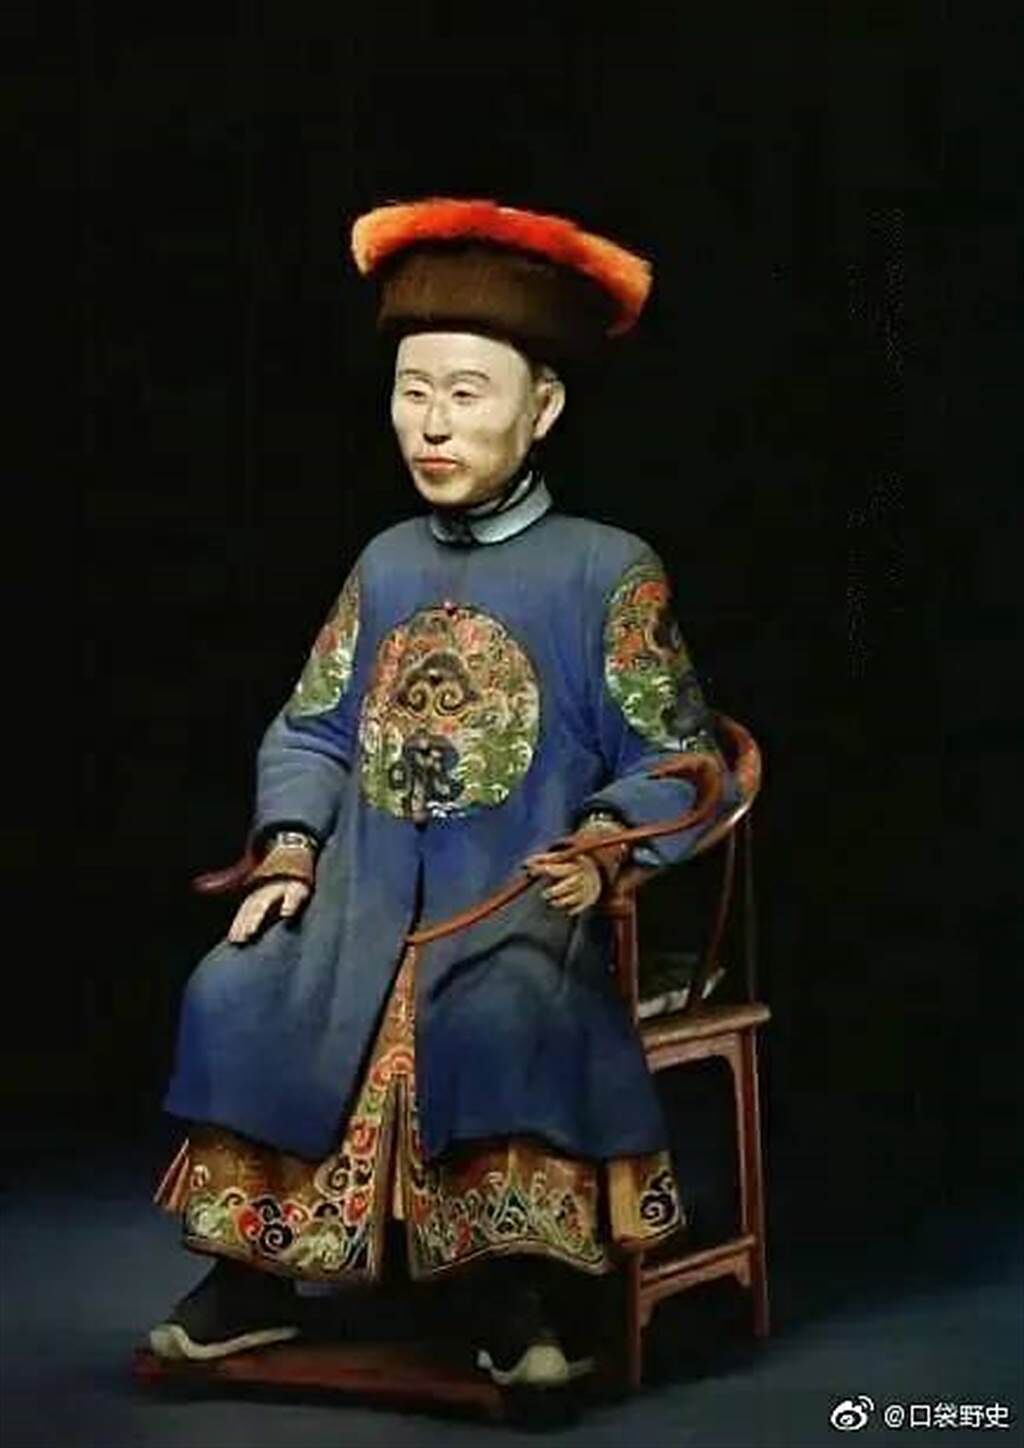 收藏在北京故宮的雍正泥塑像。(取自微博)